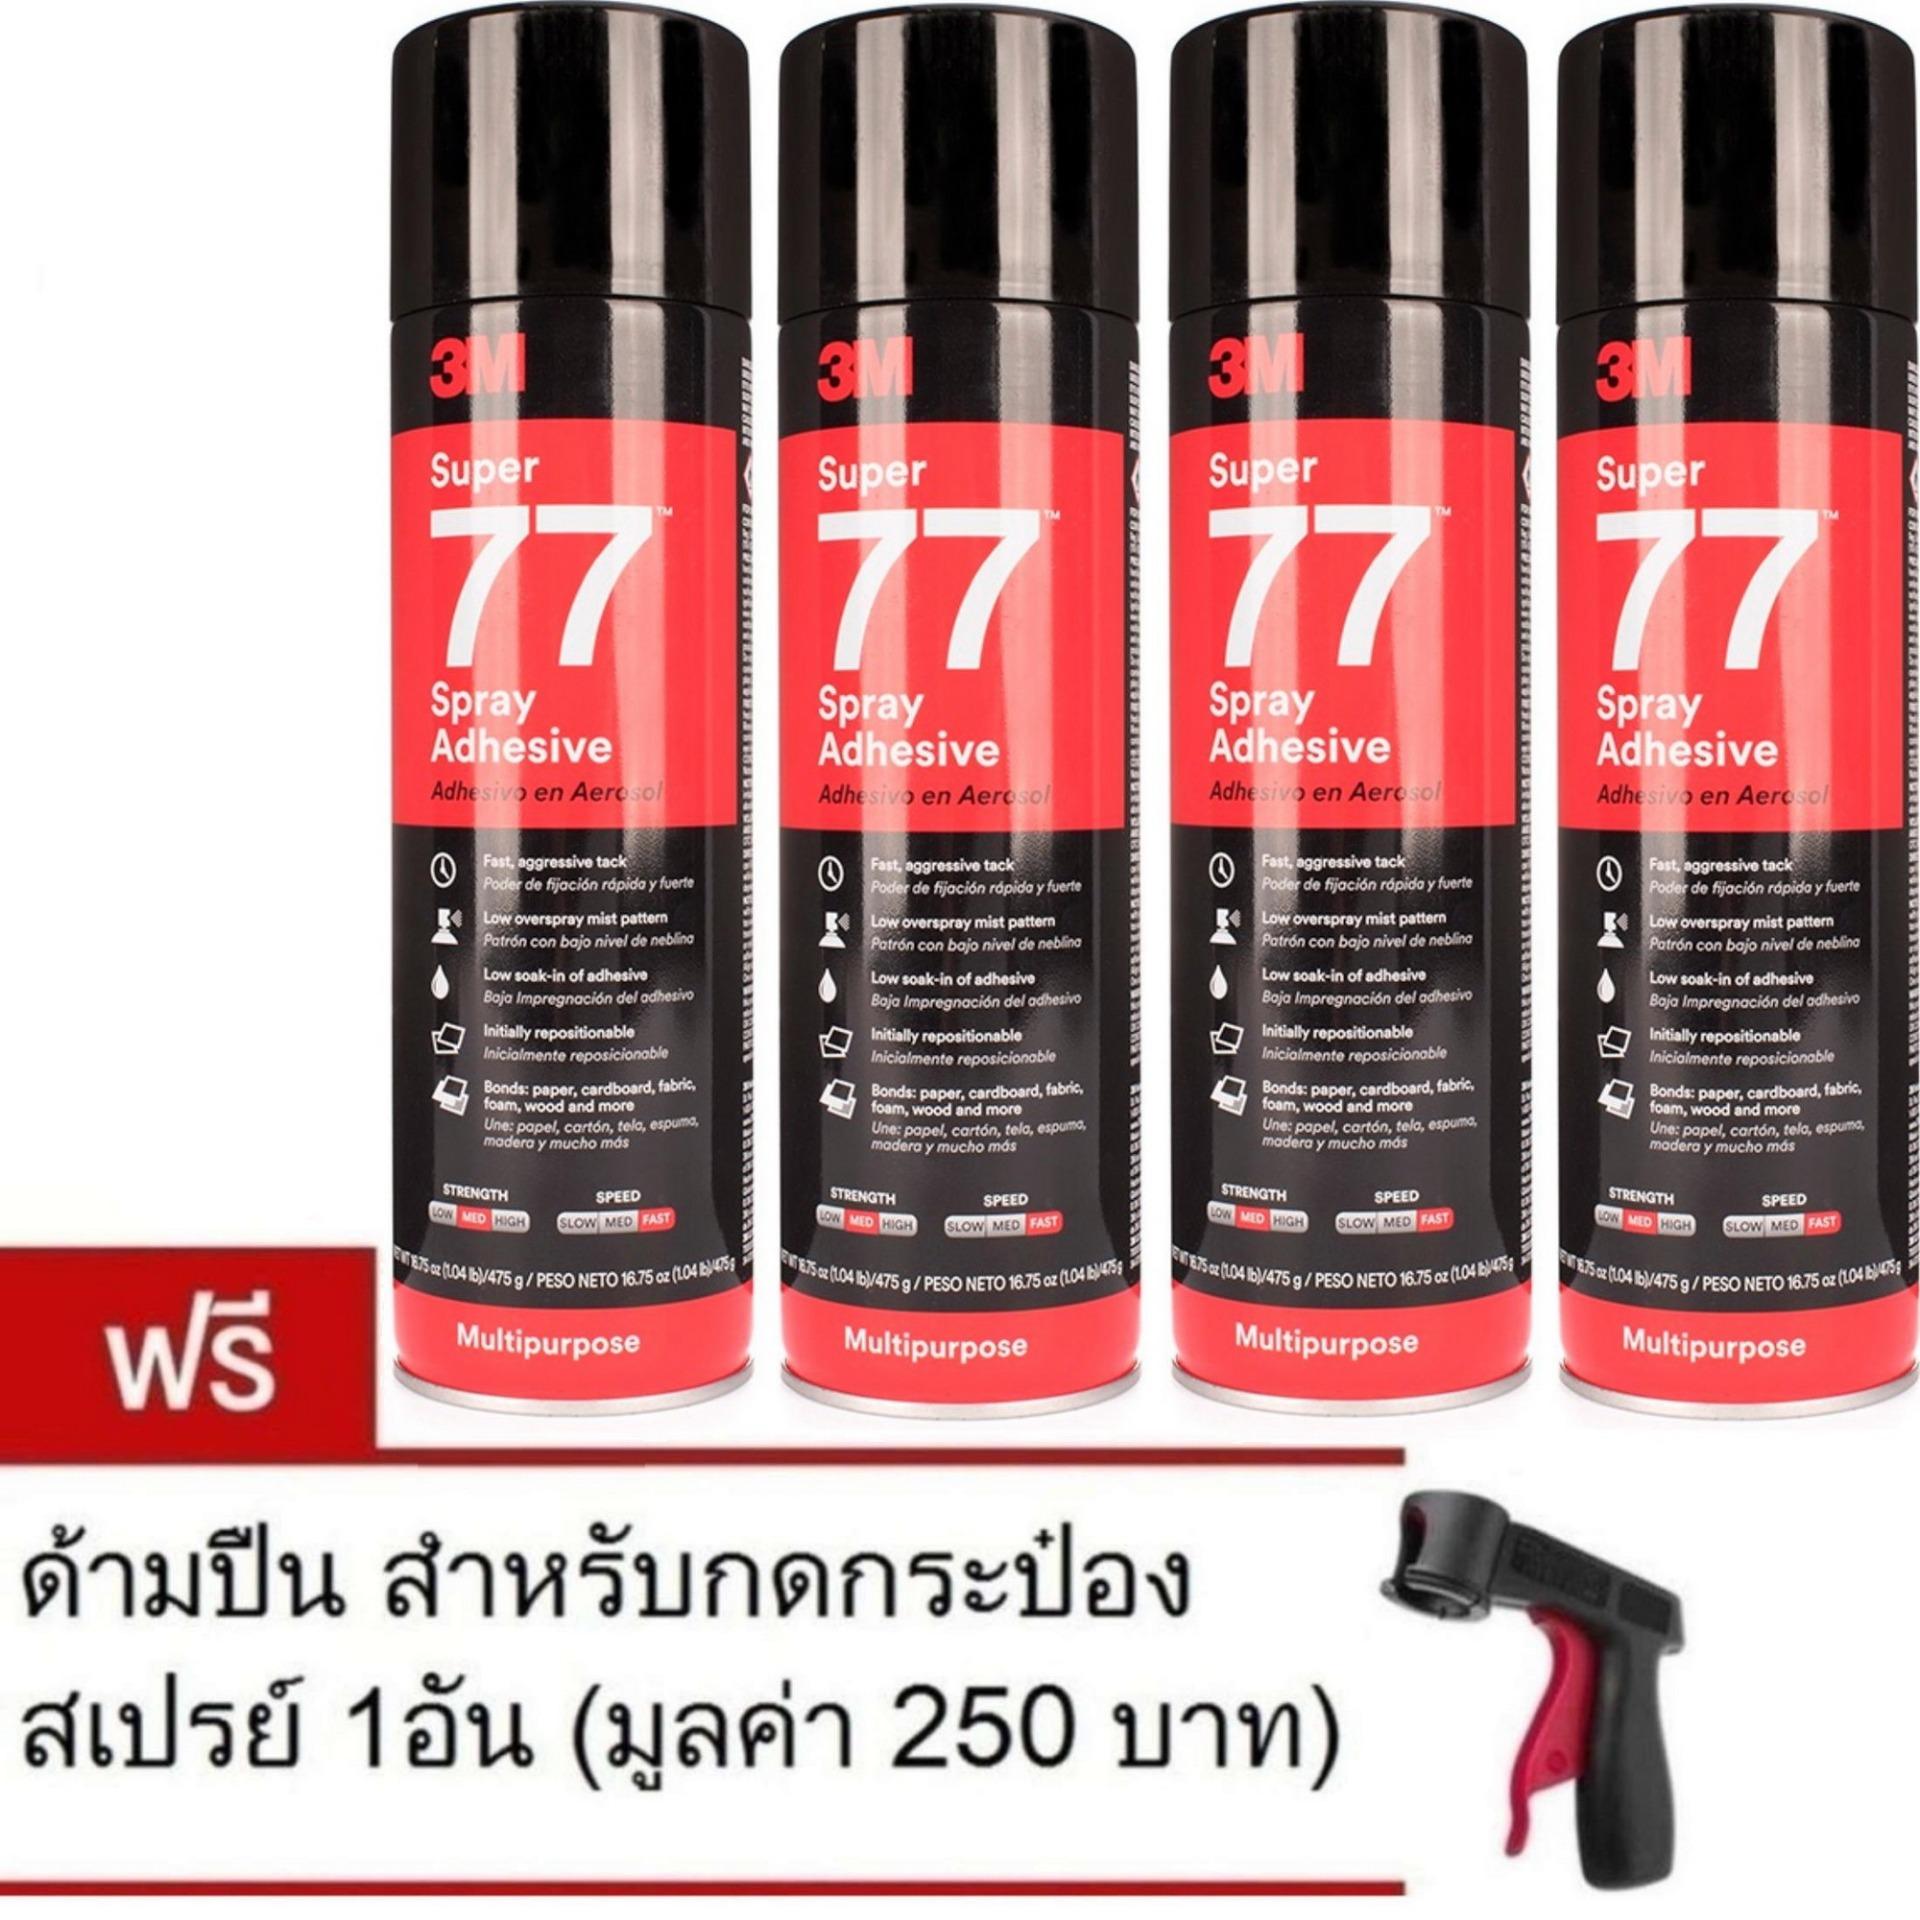 (x4กระป๋อง) 3M กาวสเปรย์ ขนาด 475g Super 77 Spray Adhesive (น้ำหนักสุทธิ16.75 oz.) แถมด้ามกด